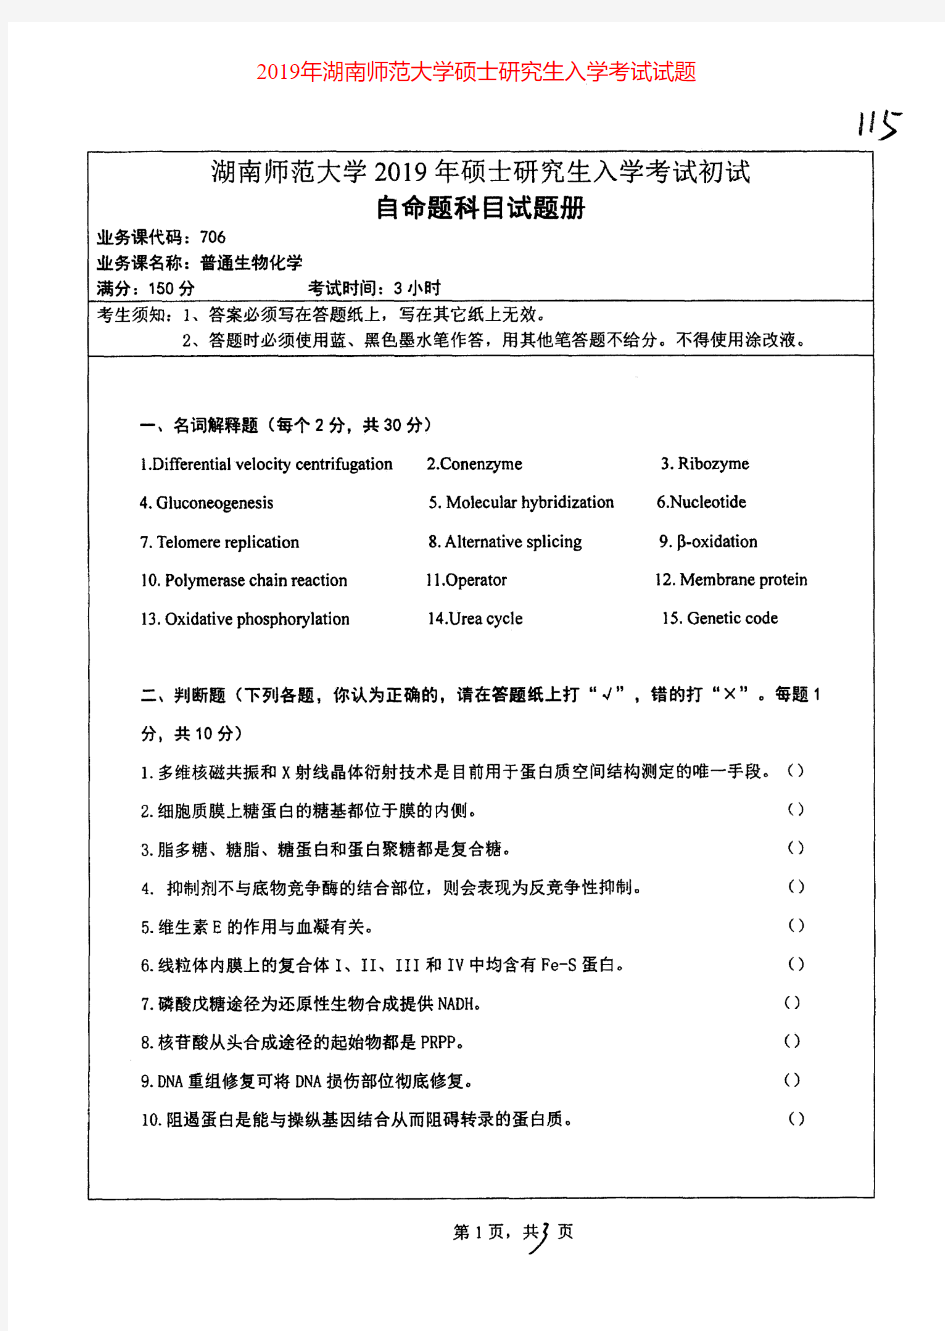 湖南师范大学706普通生物化学专业课考研真题(2019年)